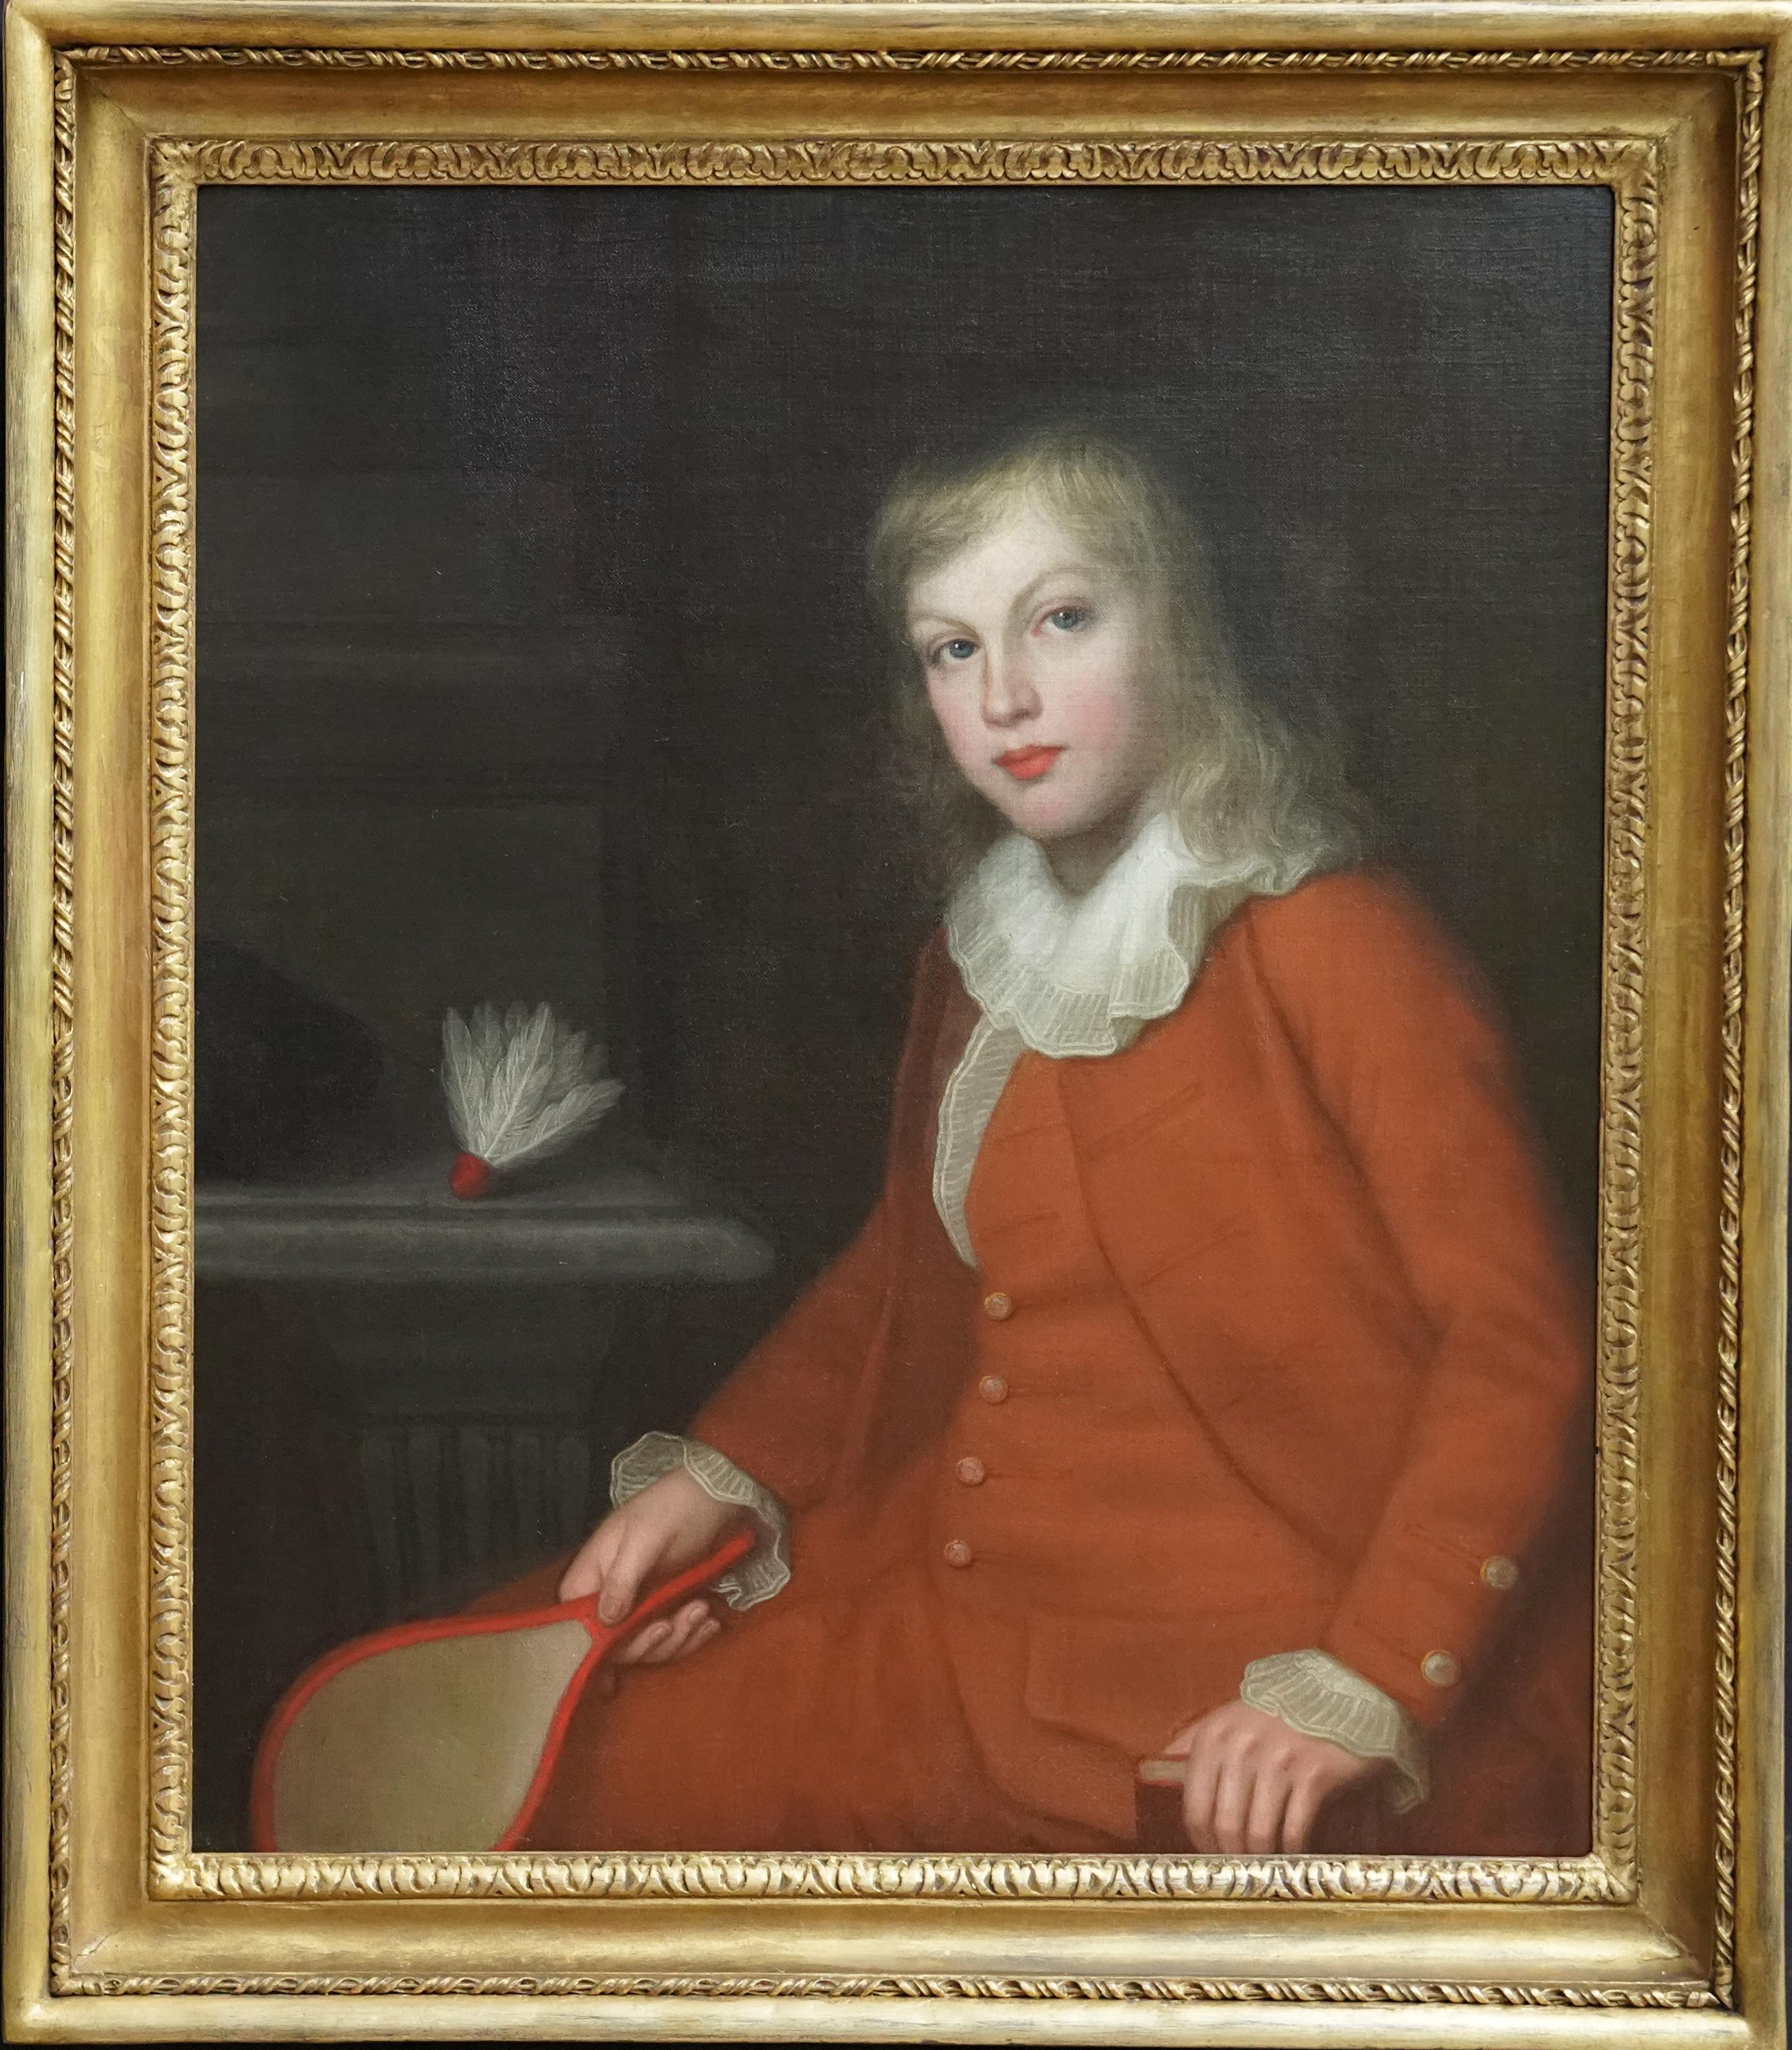 Thomas Beach Portrait Painting – Porträt von Robert Monypenny mit Racket – britisches Ölgemälde aus dem 18. Jahrhundert